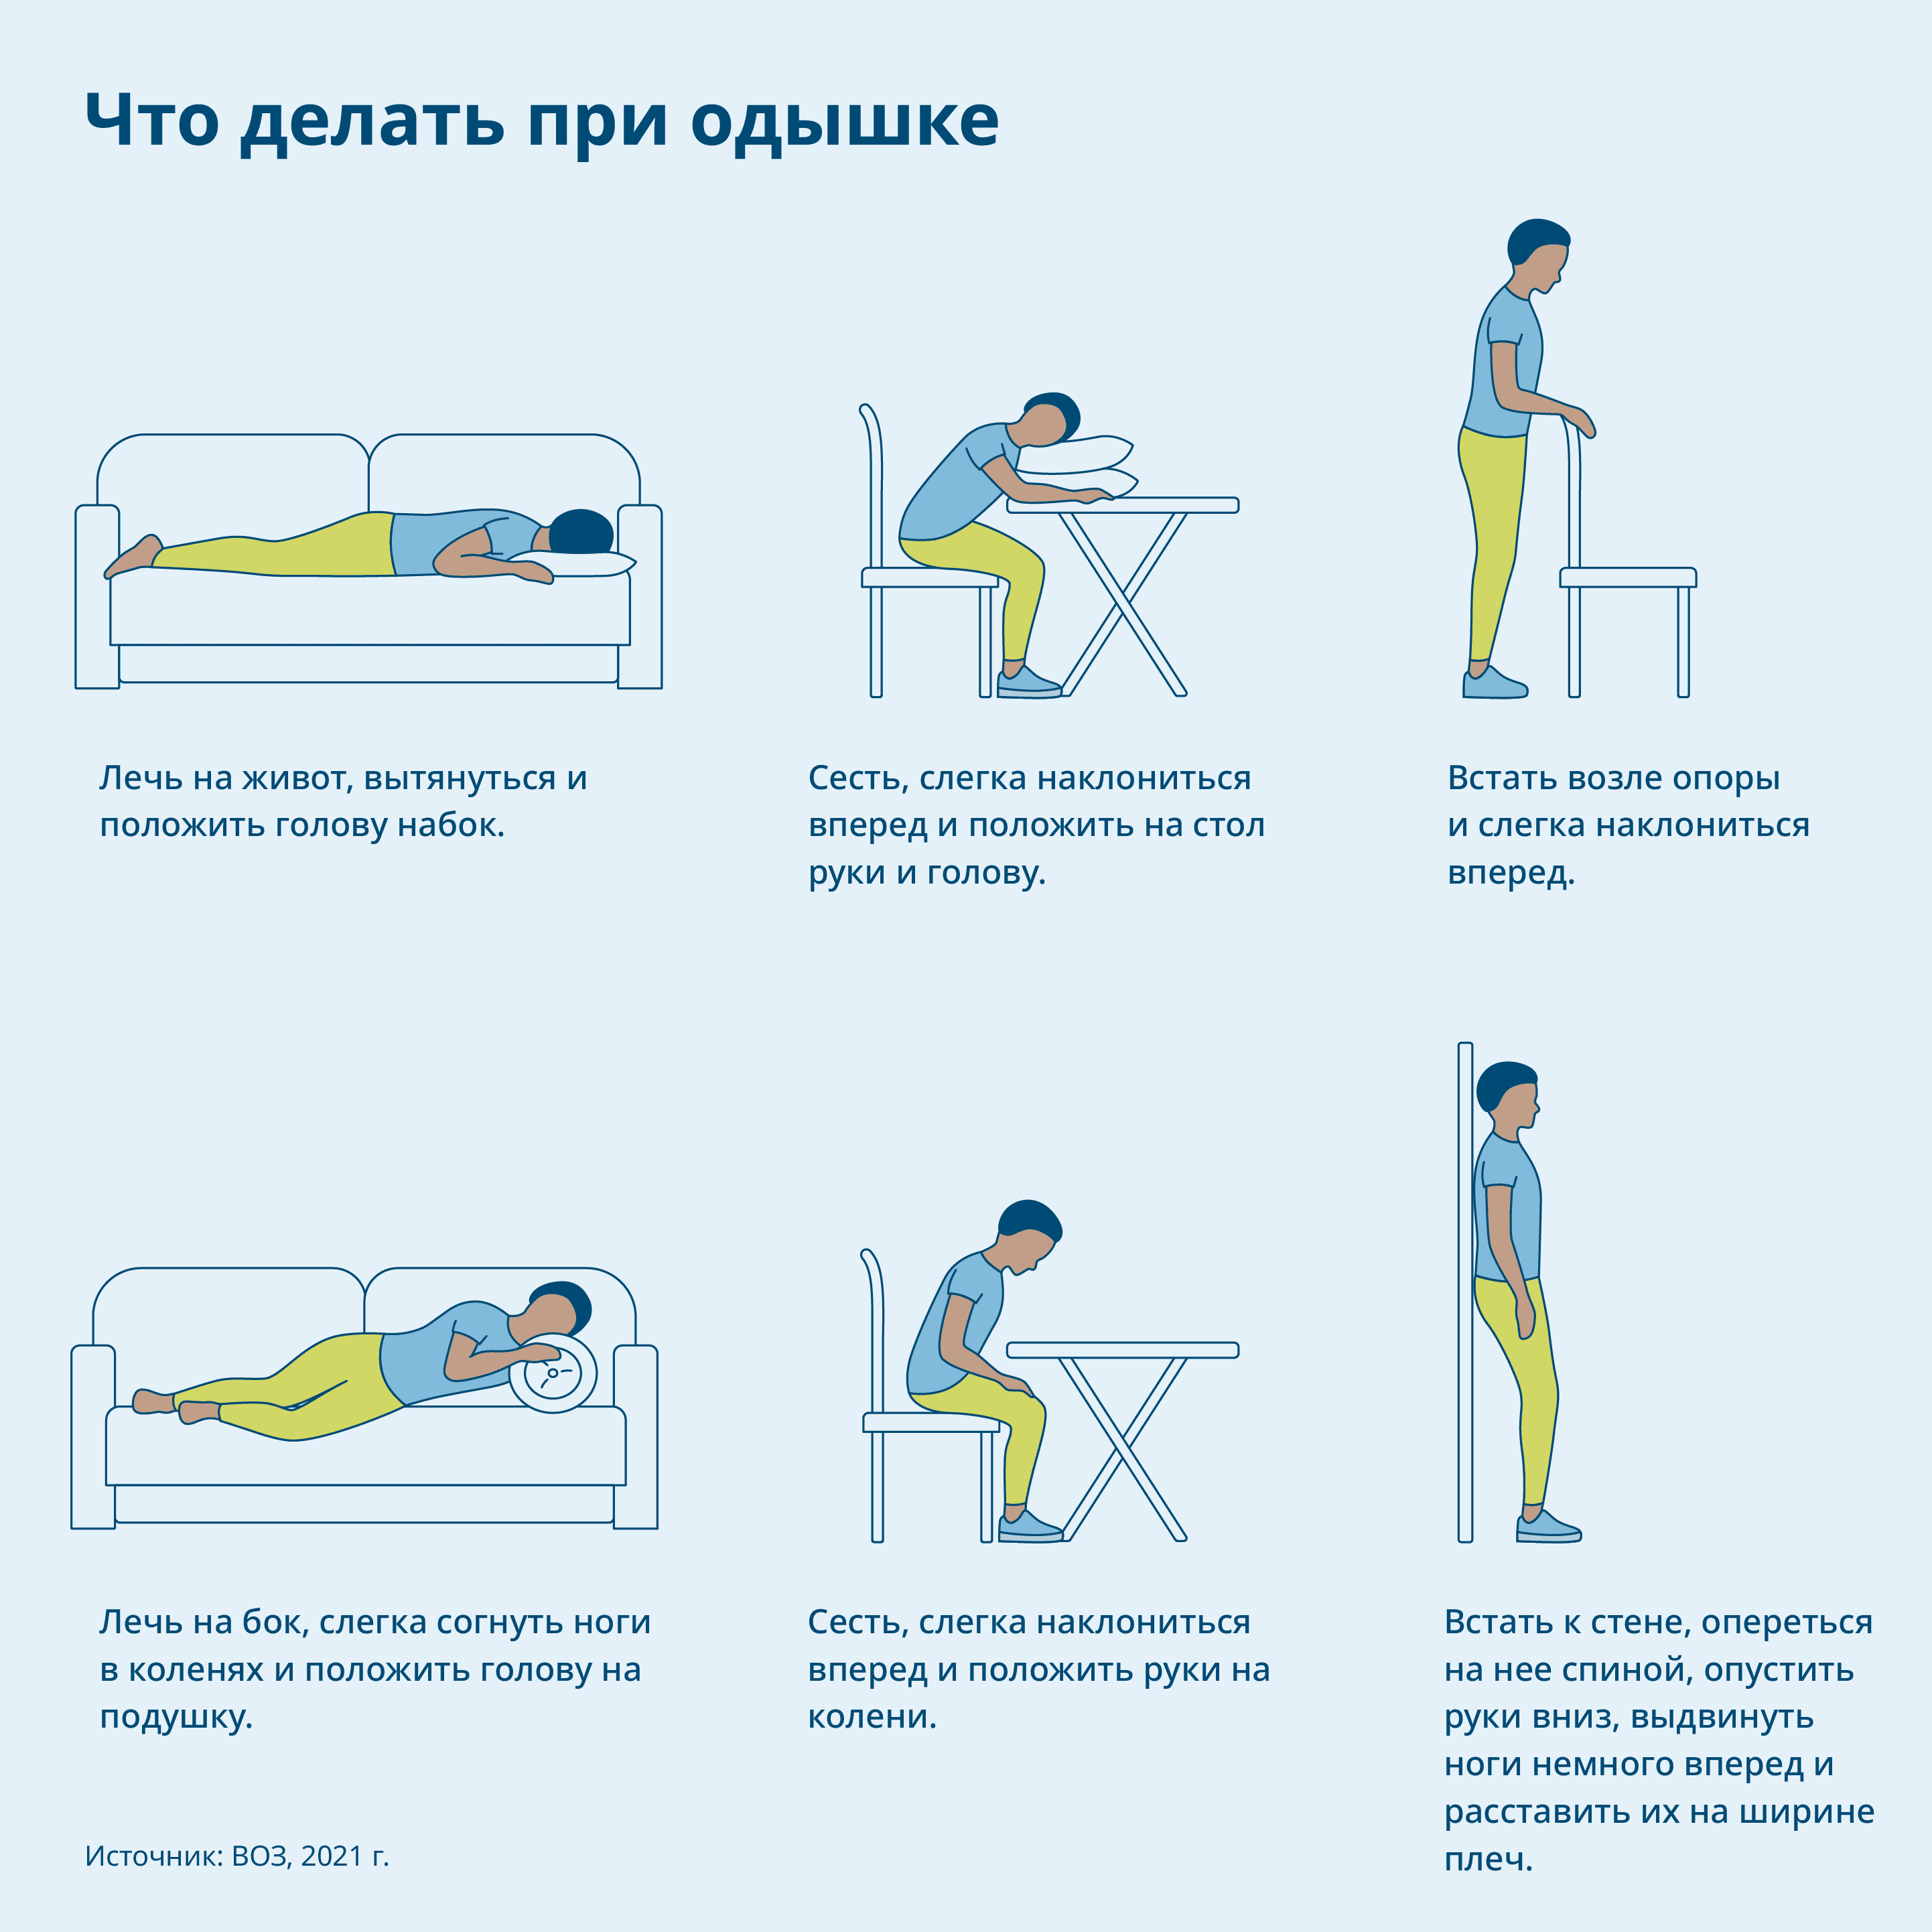 Иллюстрация: Инструкция по оказанию помощи при нарушении дыхания, человек изображен в различных позах